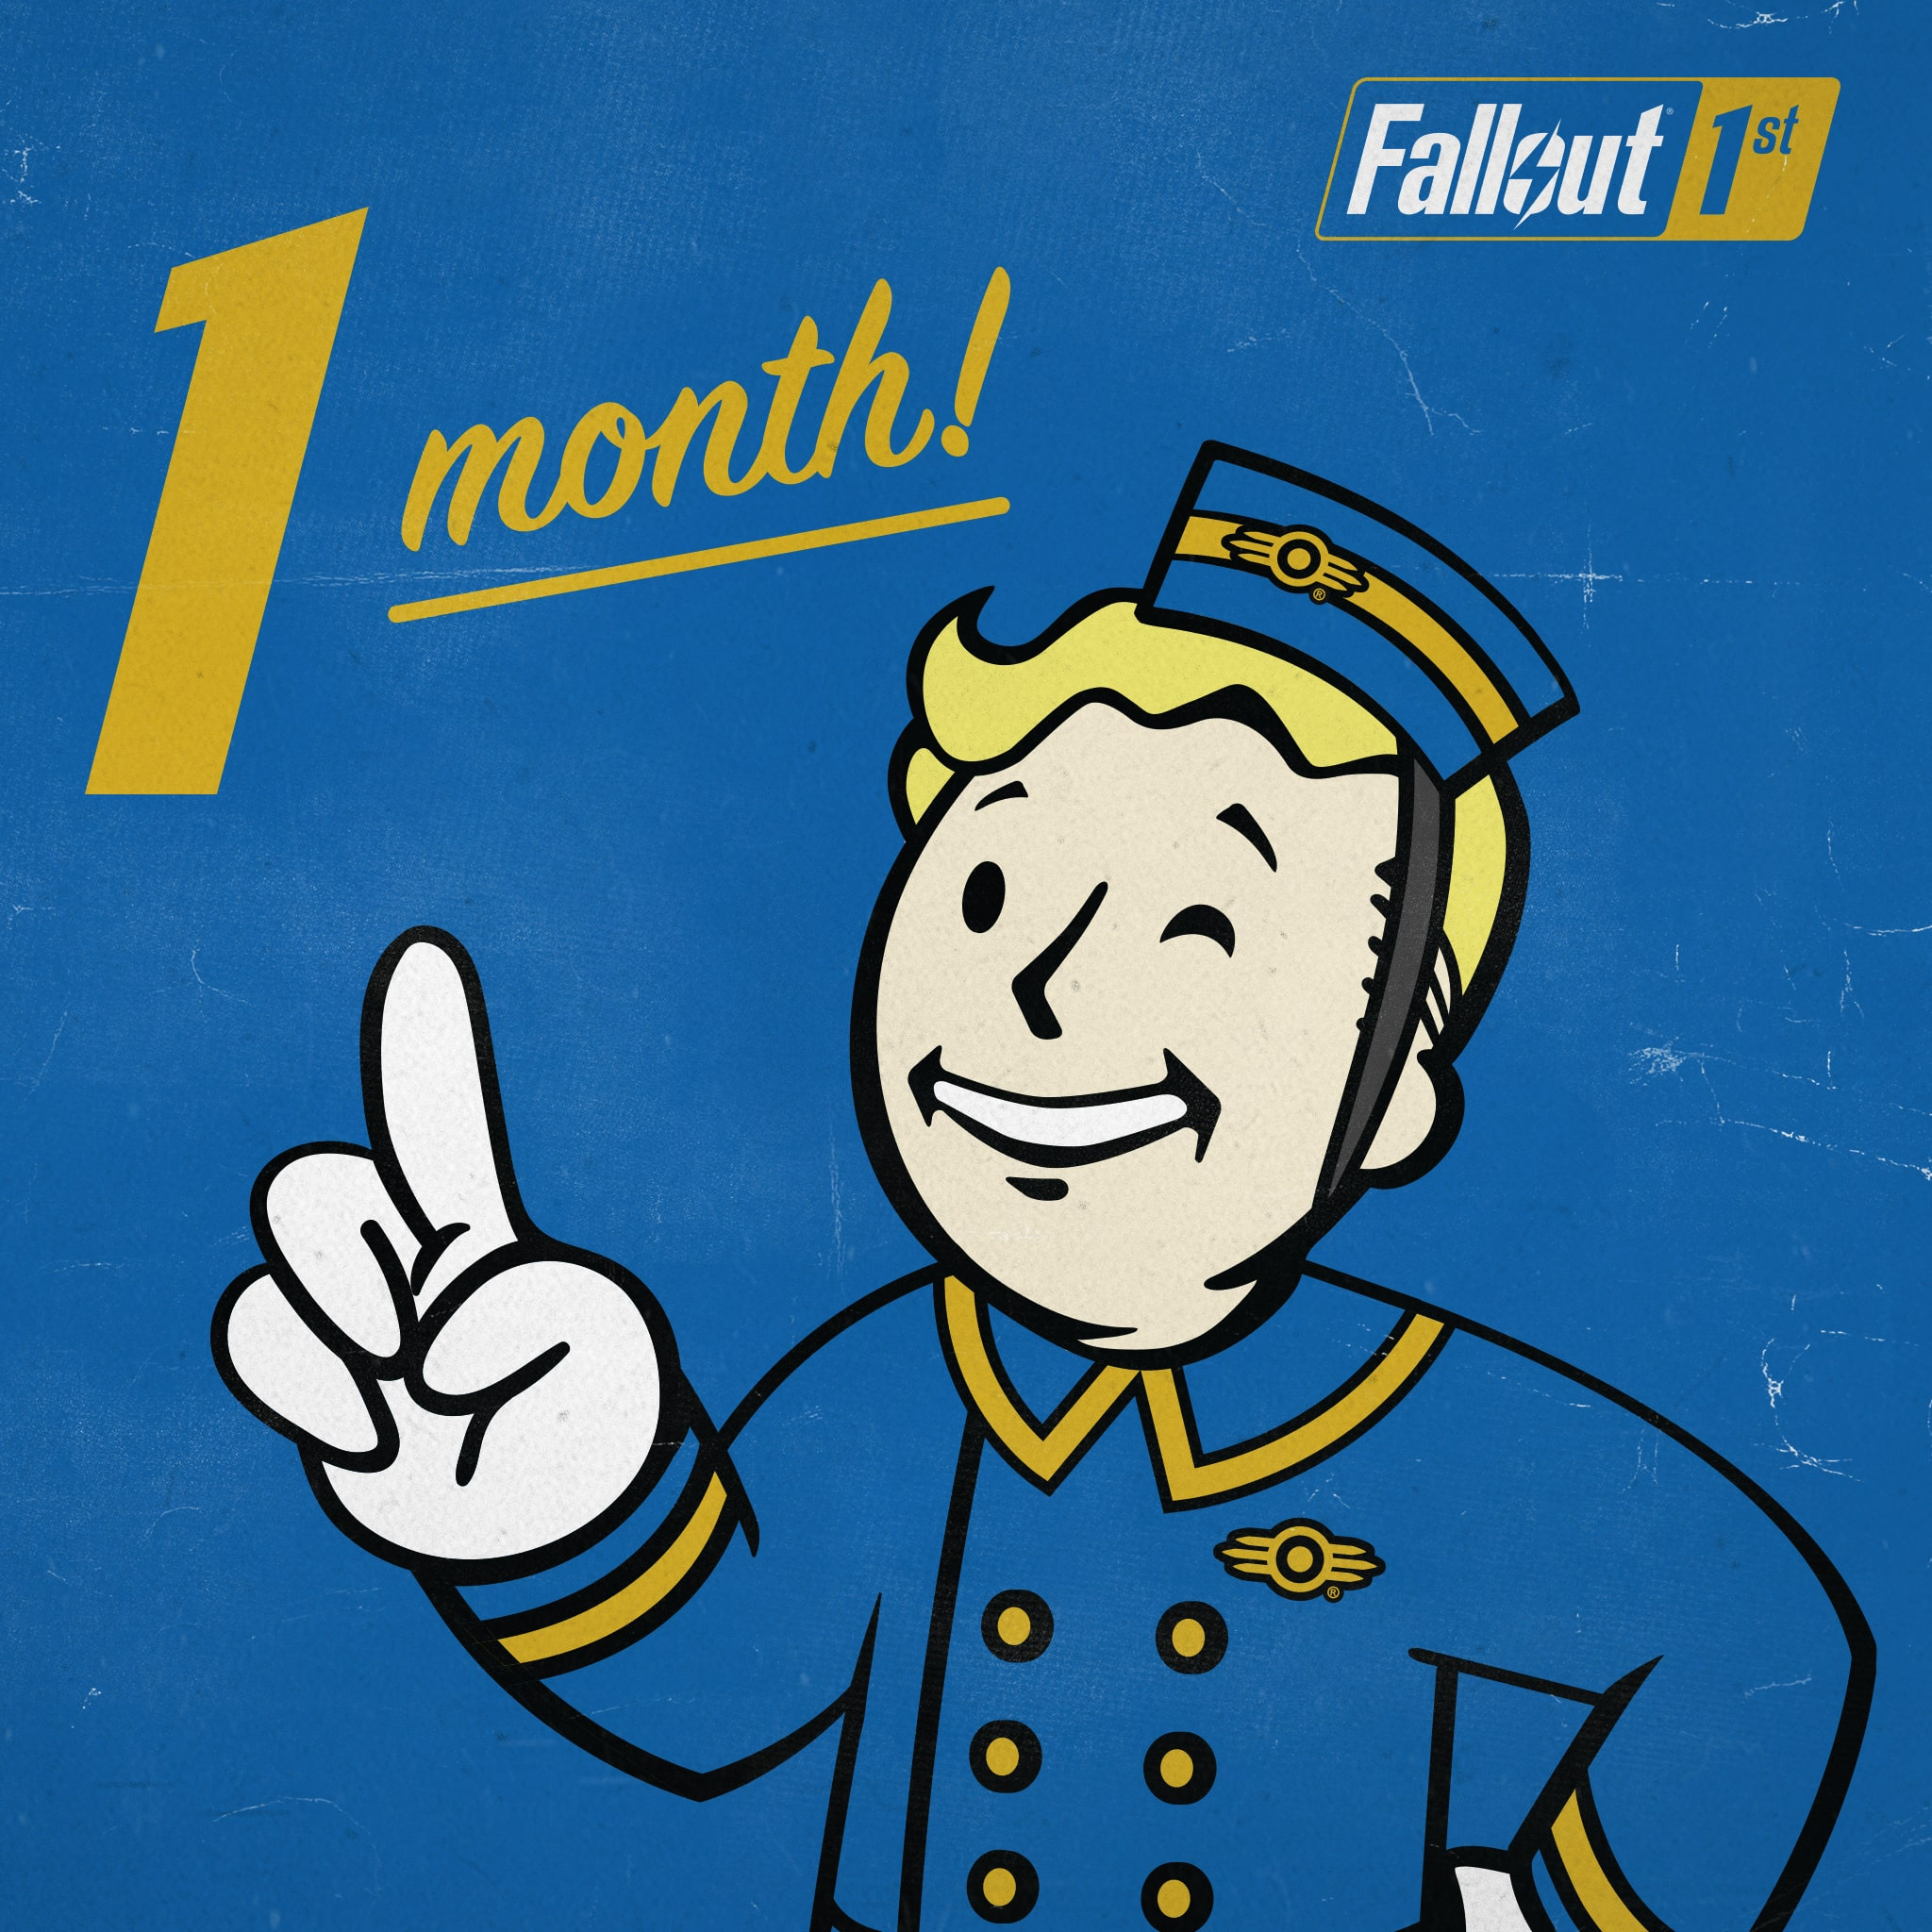 Купить фоллаут 76. Продукция Fallout. Fallout 1 ps1. Подпишись Fallout. Фоллаут 76 подписка награды.